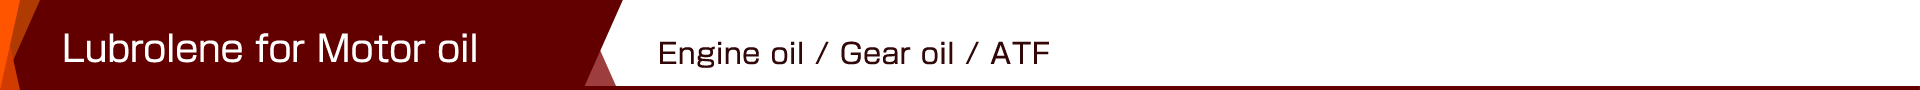 Lubrolene for Motor oil - Engine oil / Gear oil / ATF